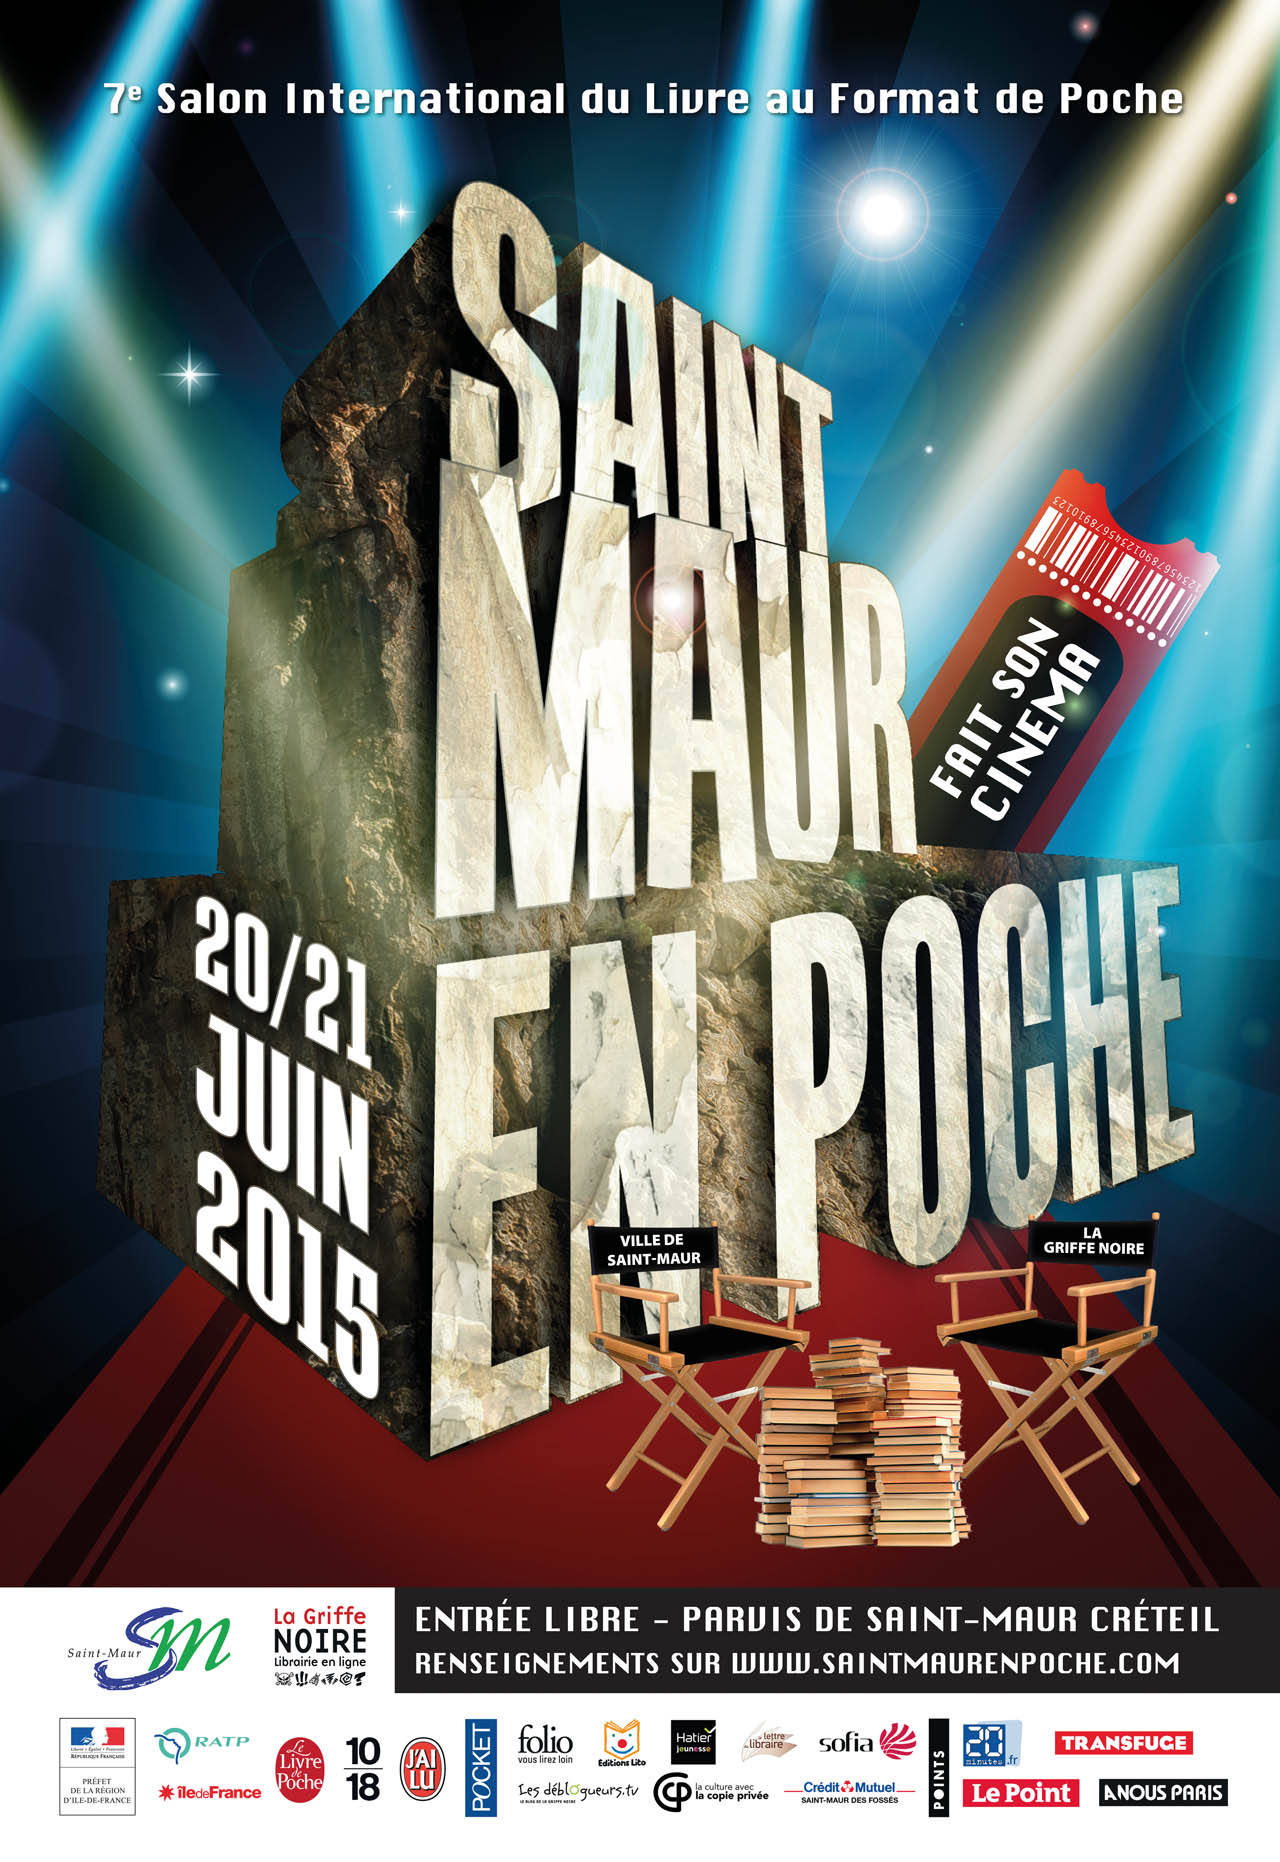 Les 20 & 21 juin 2015 : « Saint-Maur en poche” fait son cinéma